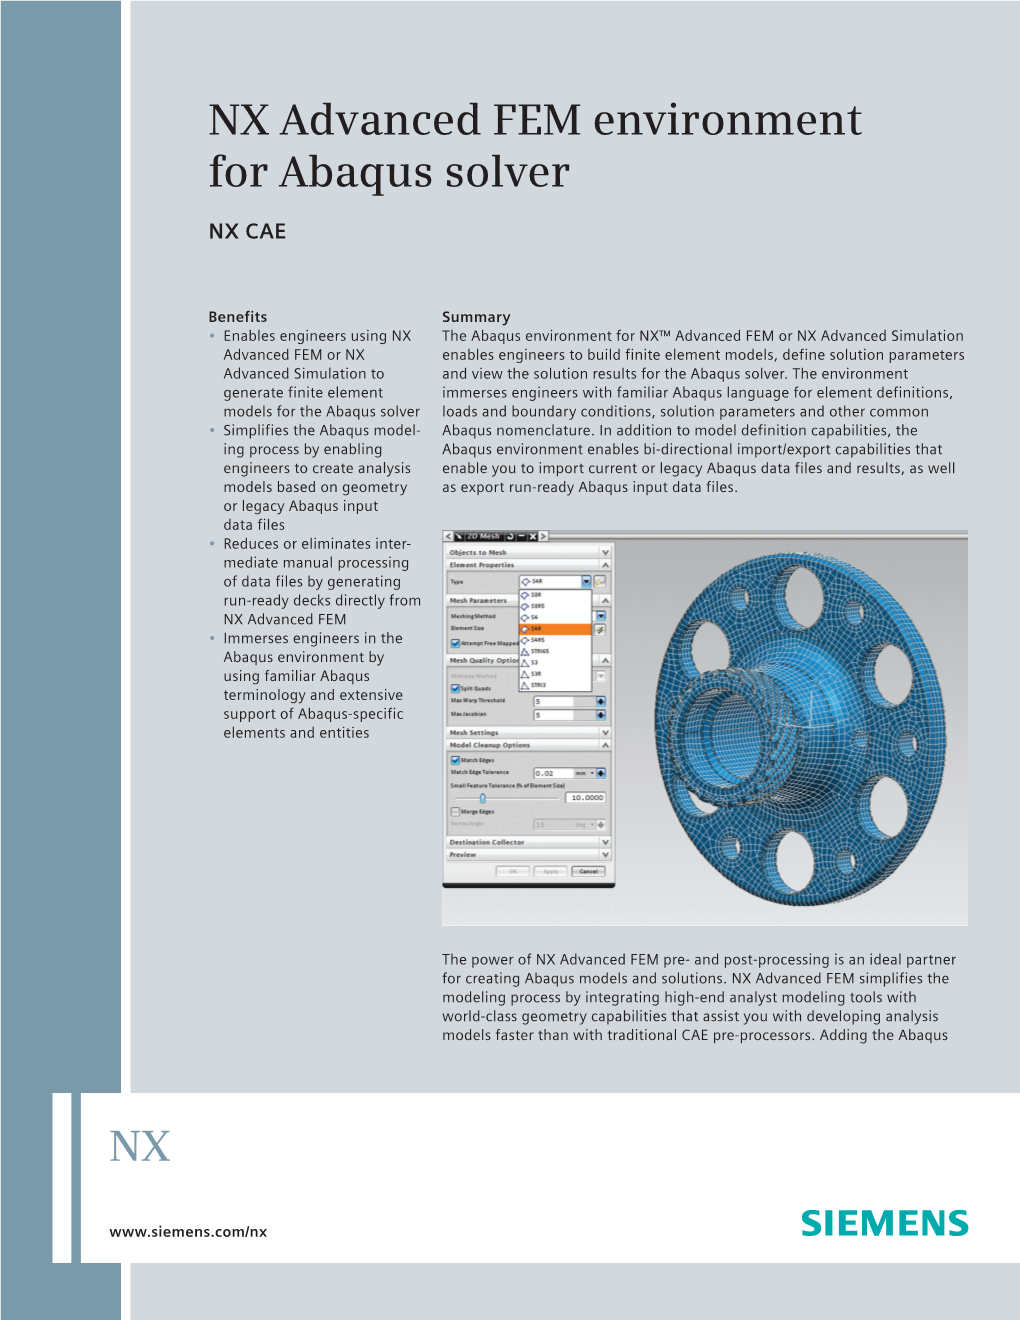 NX Advanced FEM Environment for Abaqus Solver